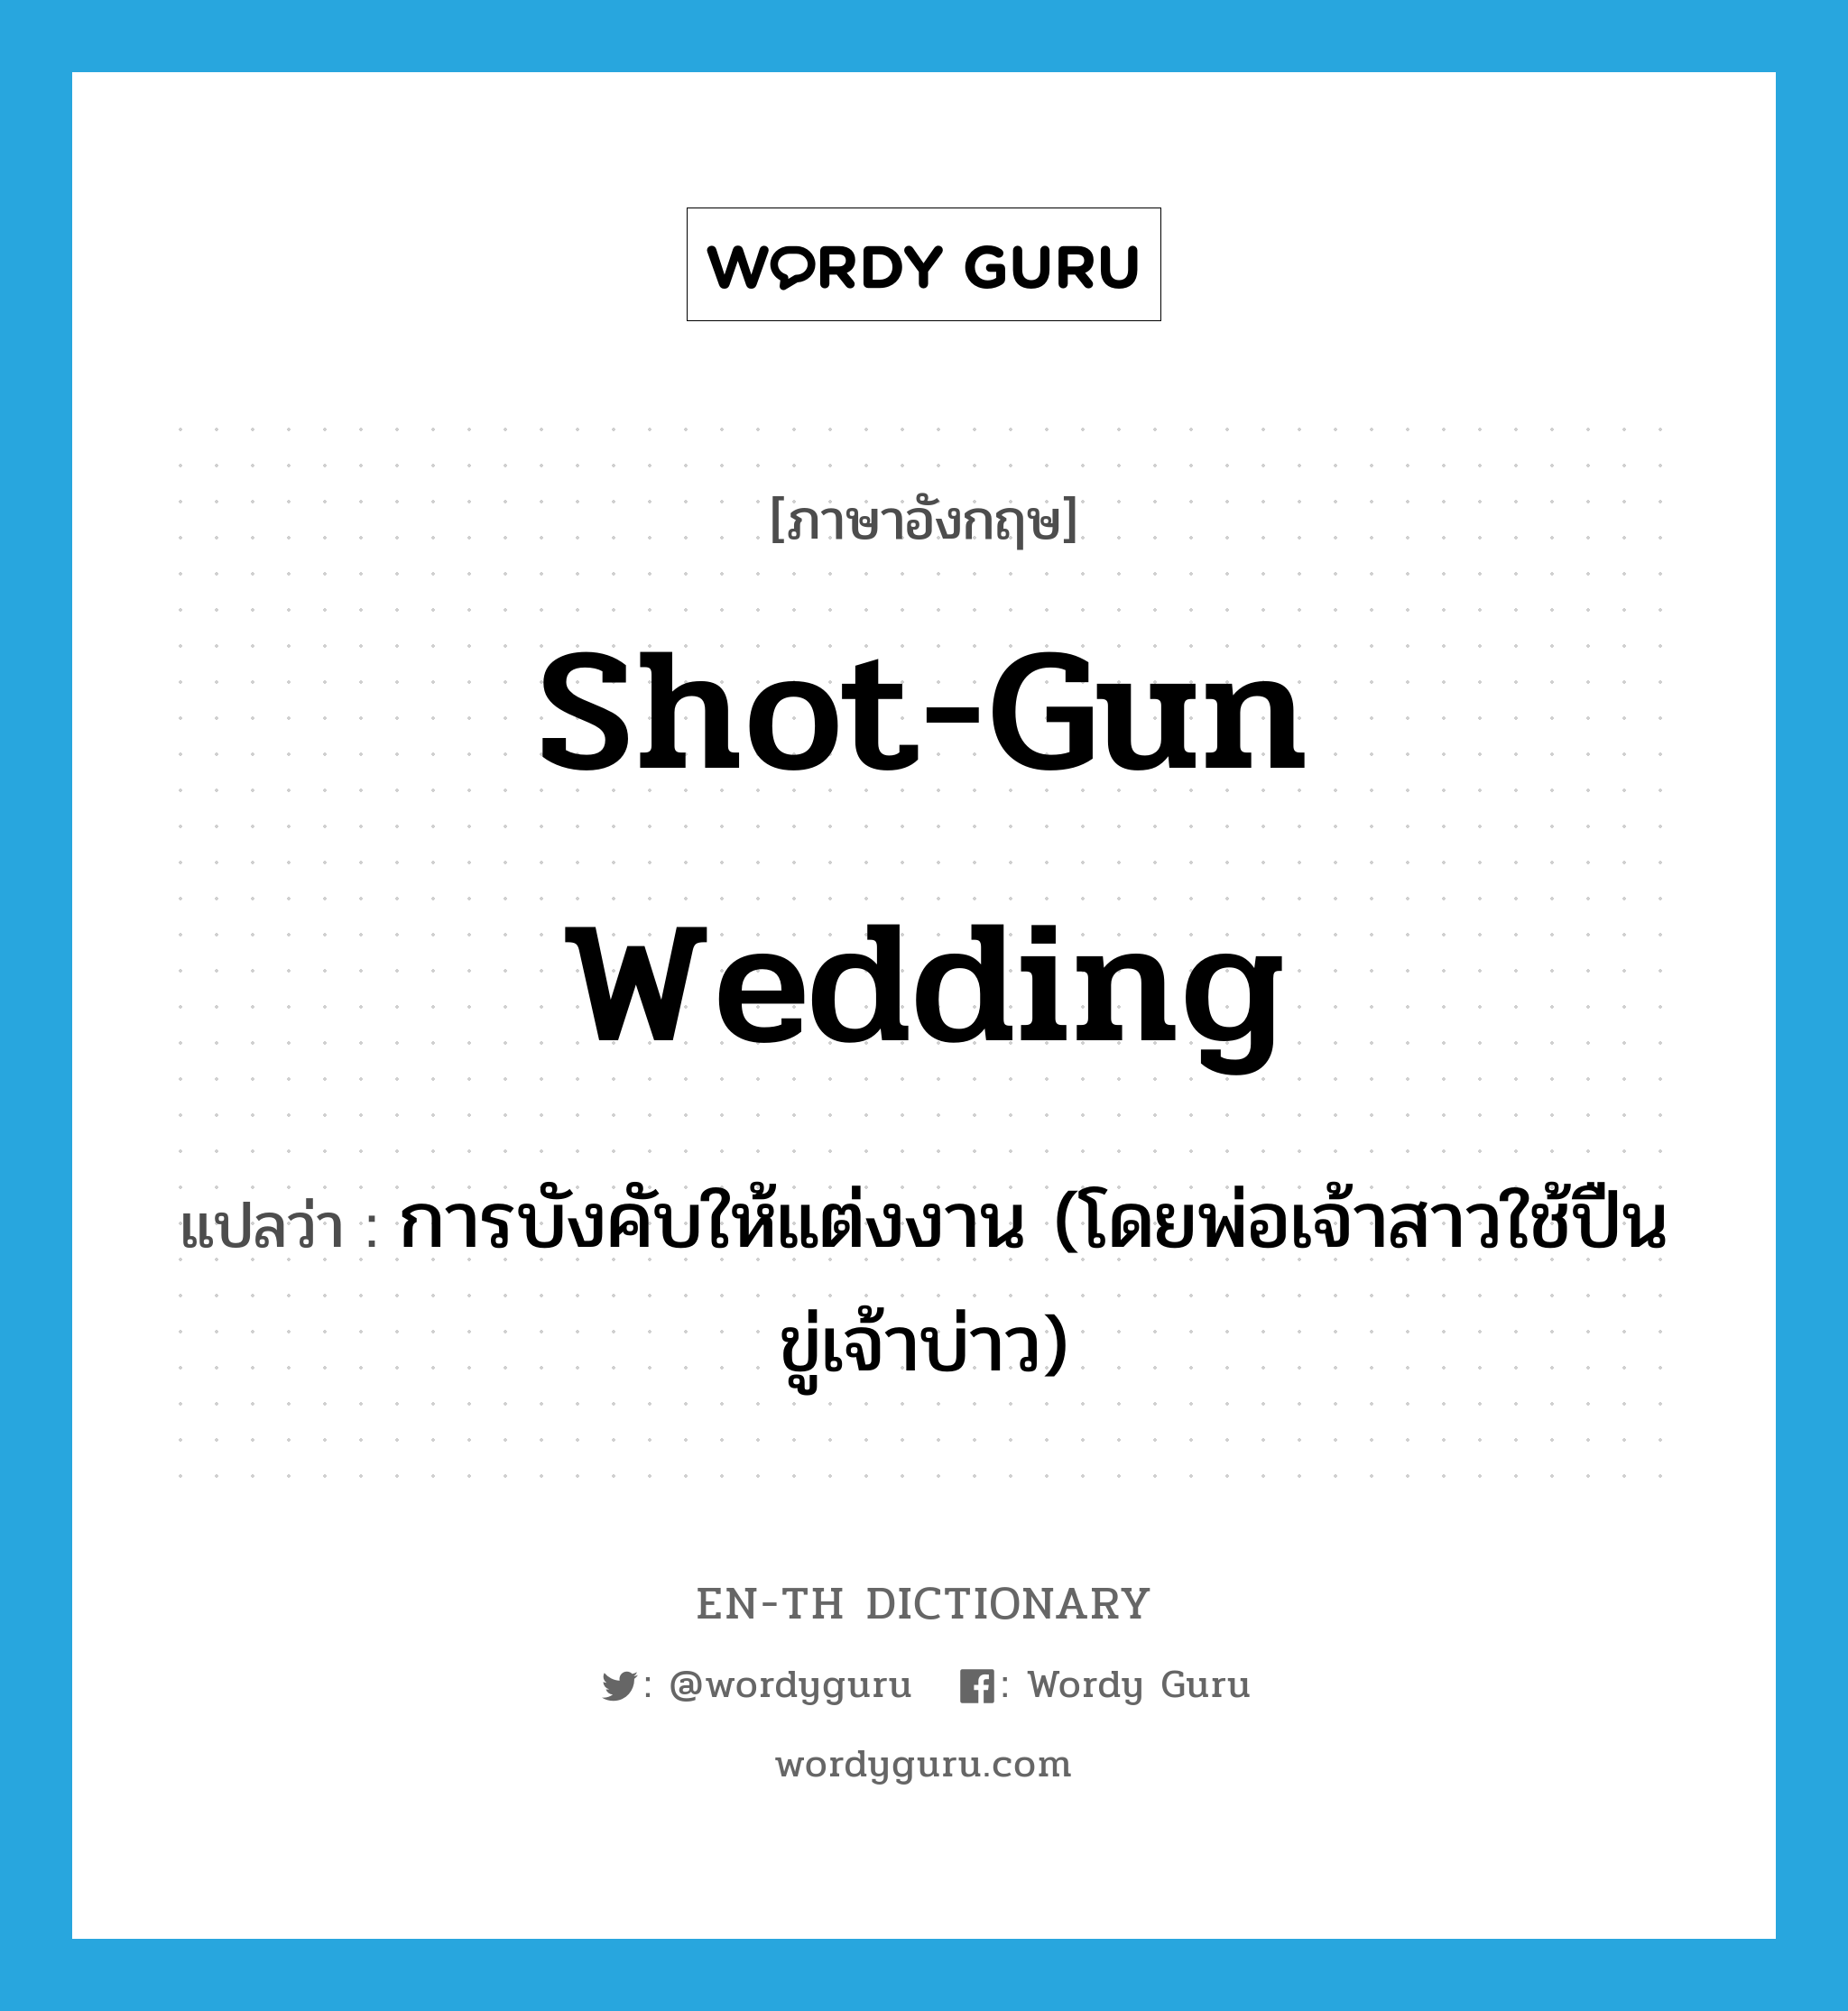 การบังคับให้แต่งงาน (โดยพ่อเจ้าสาวใช้ปืนขู่เจ้าบ่าว) ภาษาอังกฤษ?, คำศัพท์ภาษาอังกฤษ การบังคับให้แต่งงาน (โดยพ่อเจ้าสาวใช้ปืนขู่เจ้าบ่าว) แปลว่า shot-gun wedding ประเภท IDM หมวด IDM